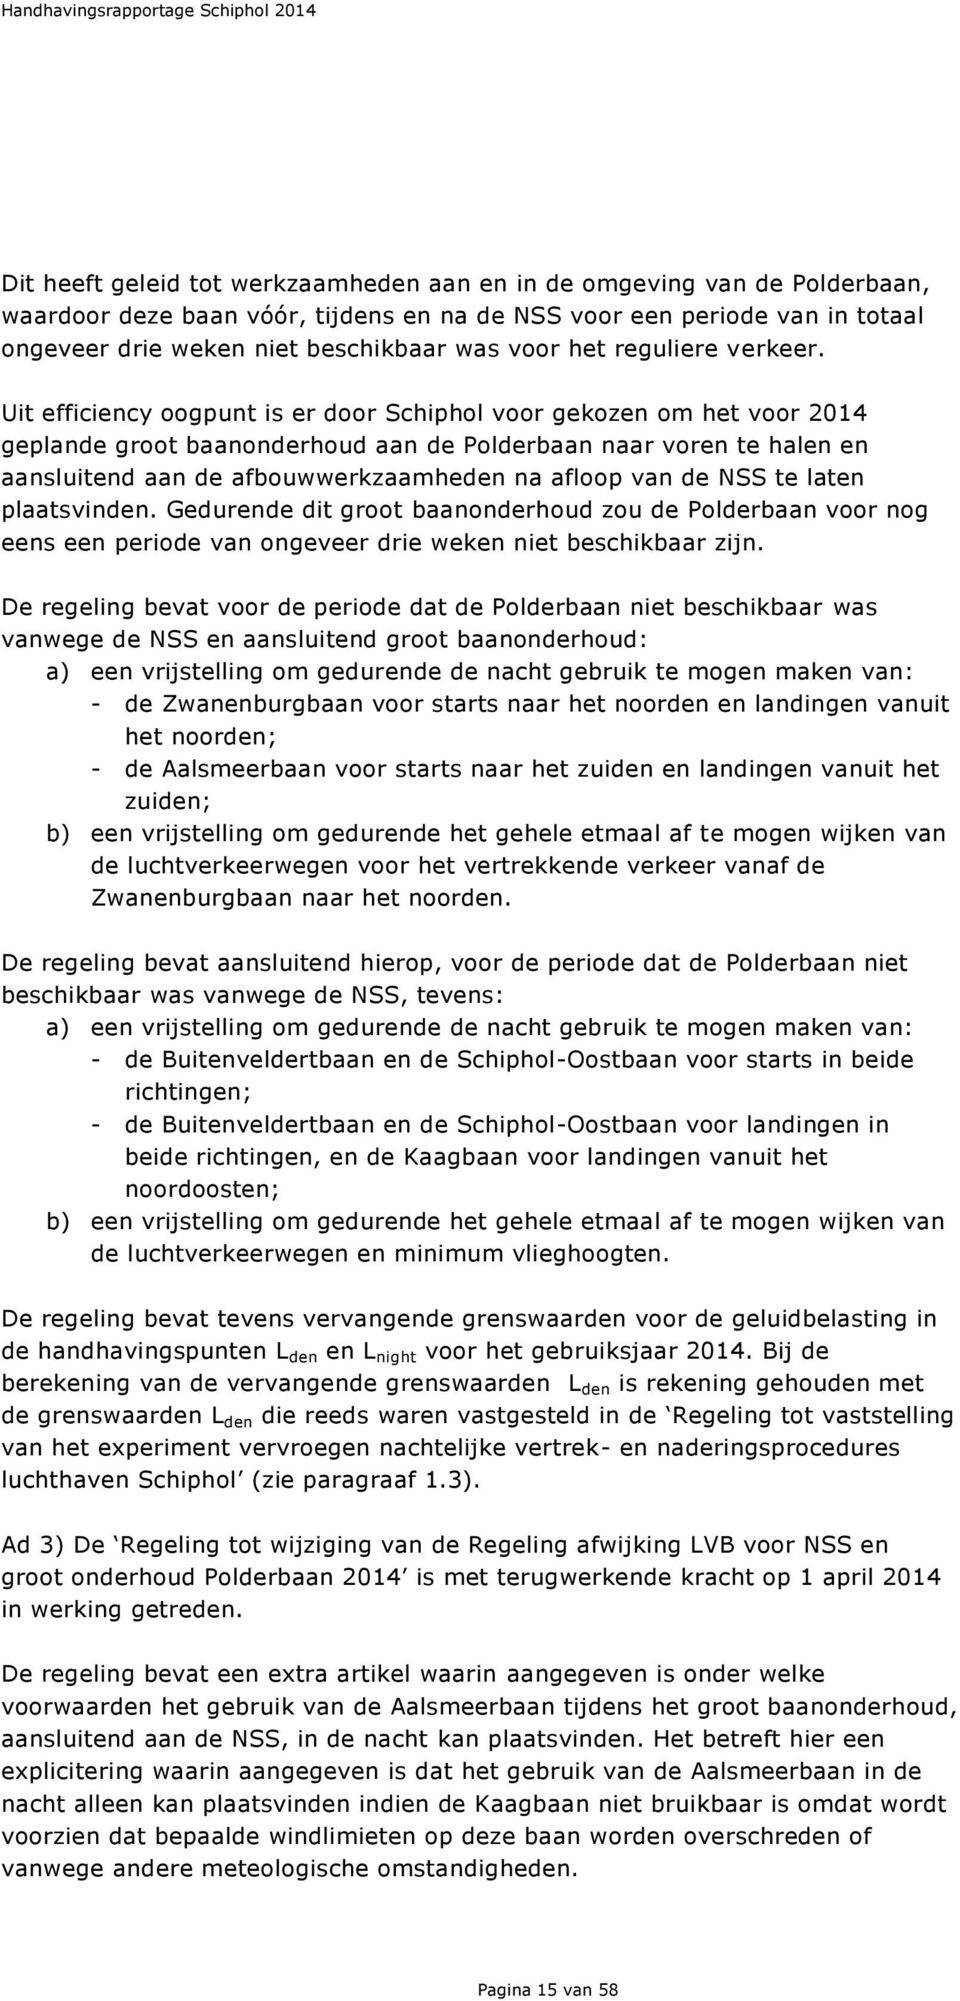 Uit efficiency oogpunt is er door Schiphol voor gekozen om het voor 2014 geplande groot baanonderhoud aan de Polderbaan naar voren te halen en aansluitend aan de afbouwwerkzaamheden na afloop van de